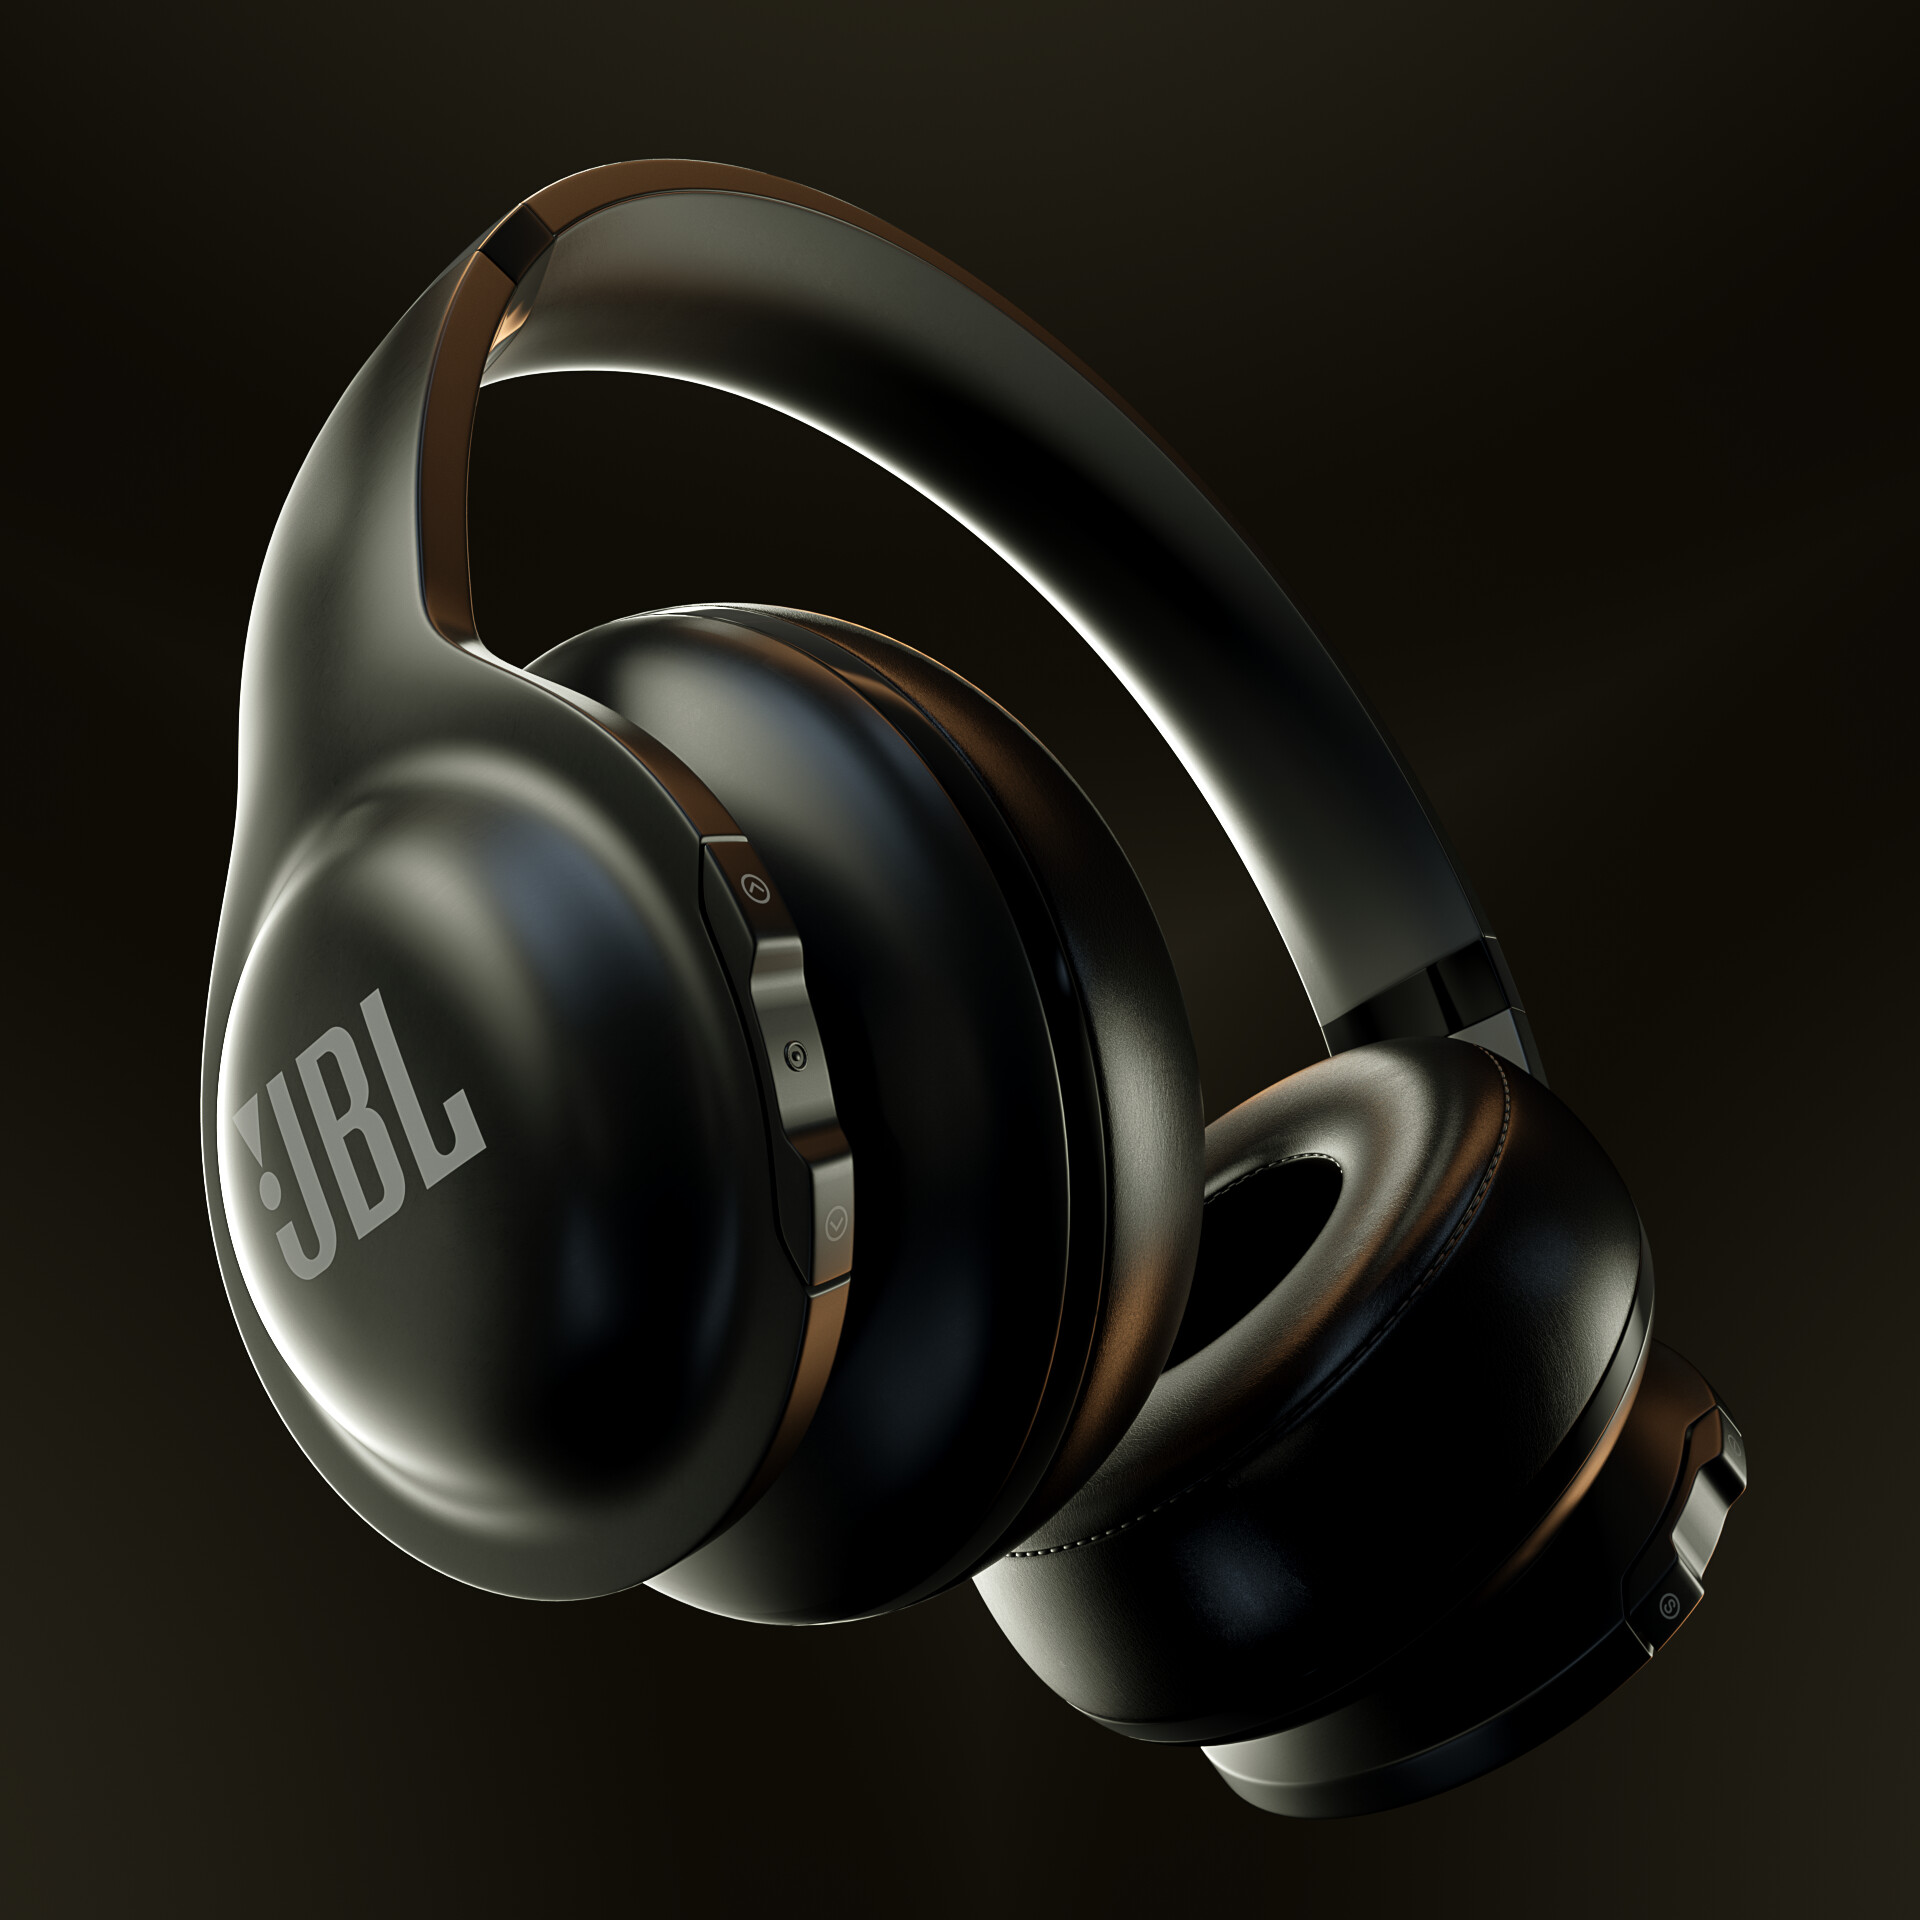 Tai Nghe Bluetooth On-ear JBL Everest 300 Chính Hãng